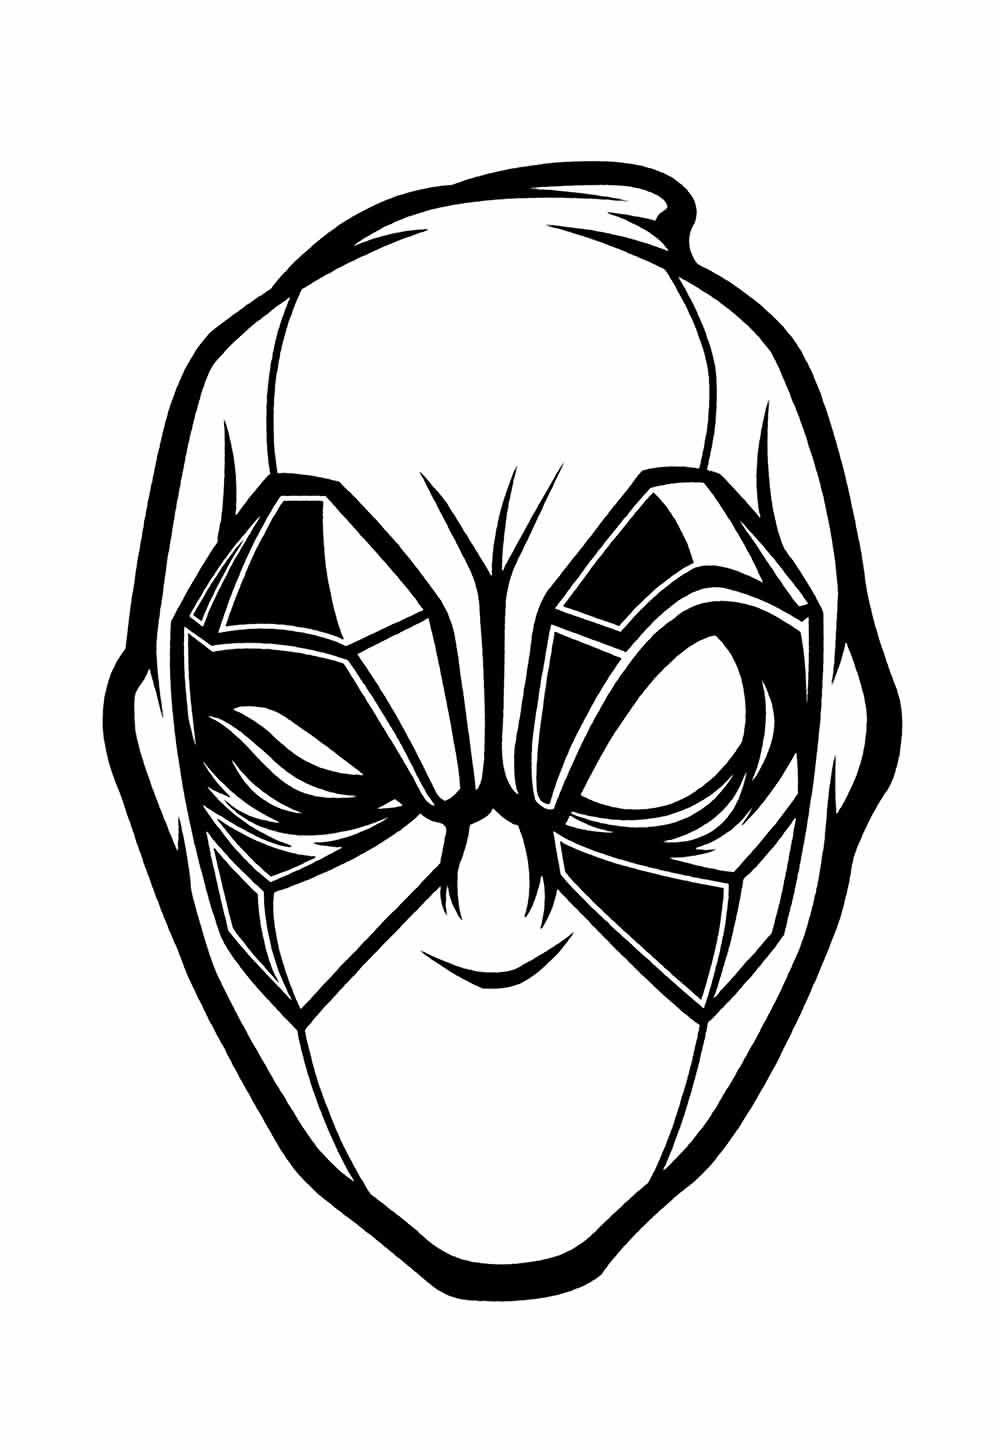 Máscara do Deadpool para imprimir